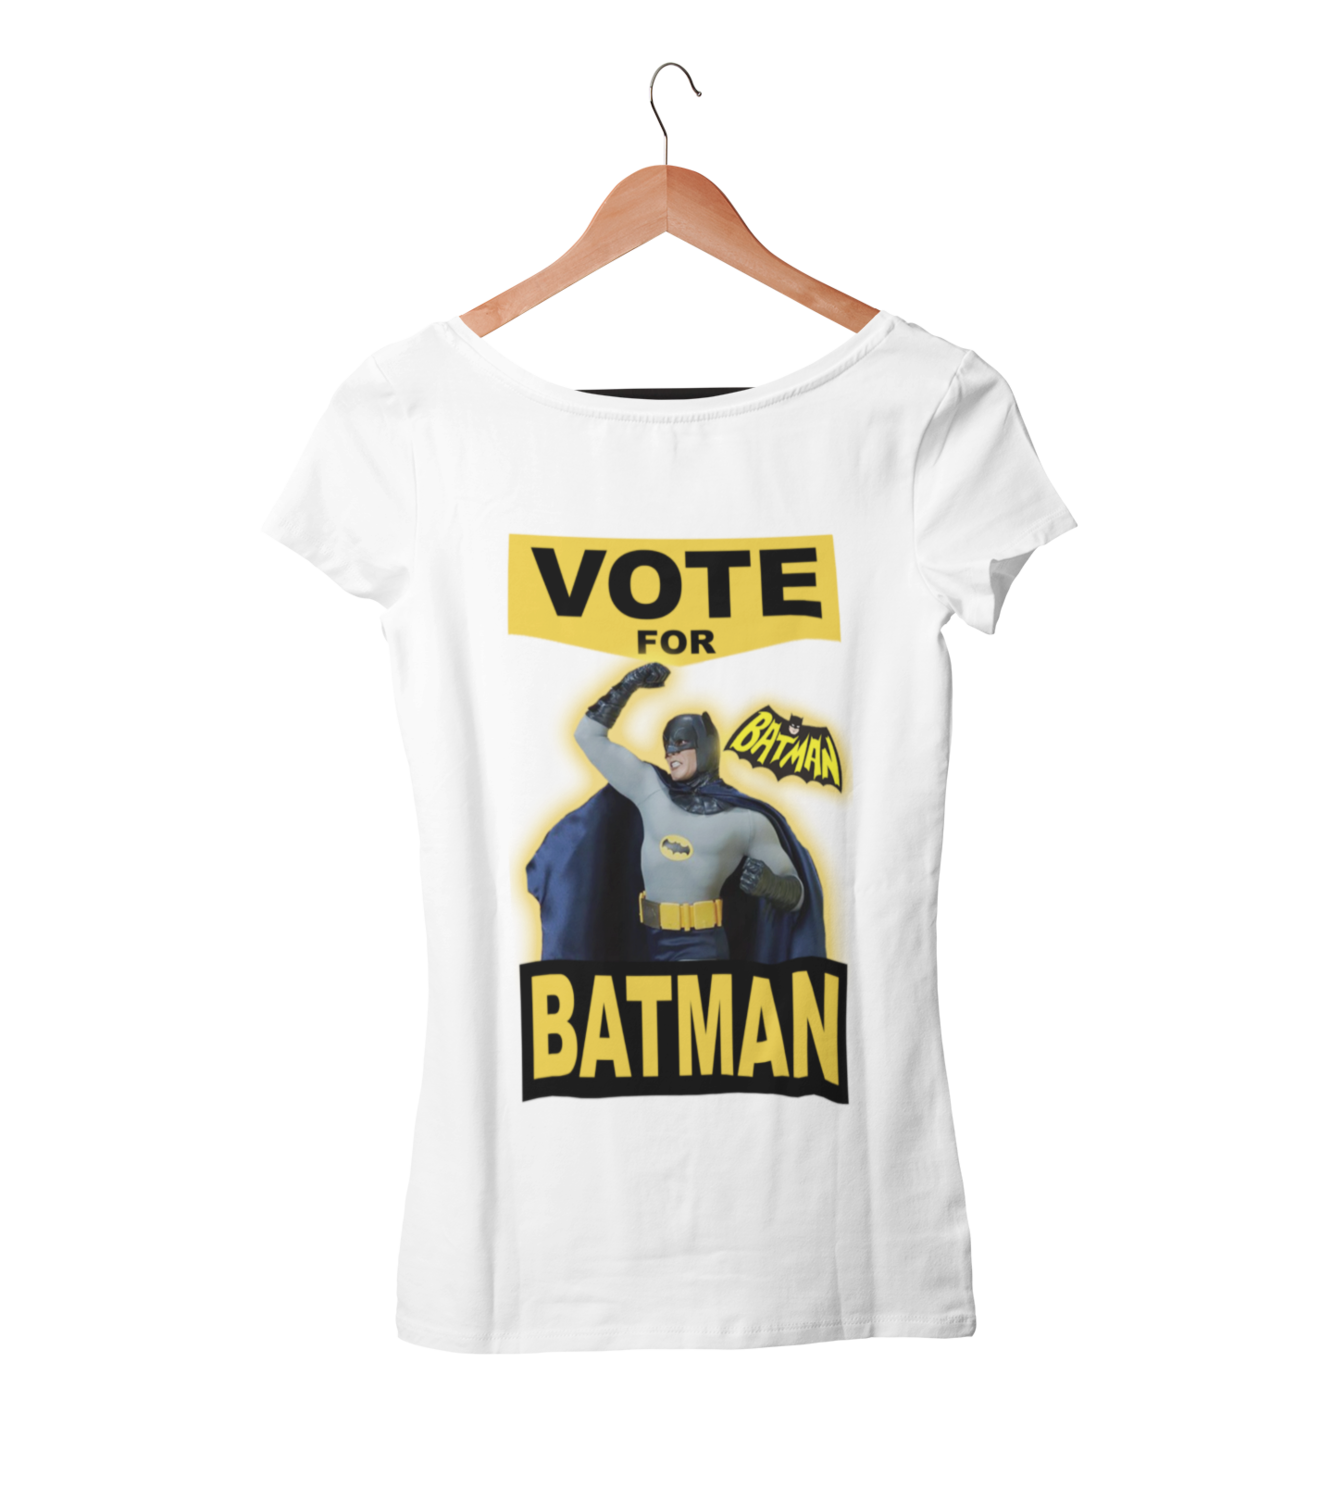 VOTE FOR BATMAN T-shirt WOMAN